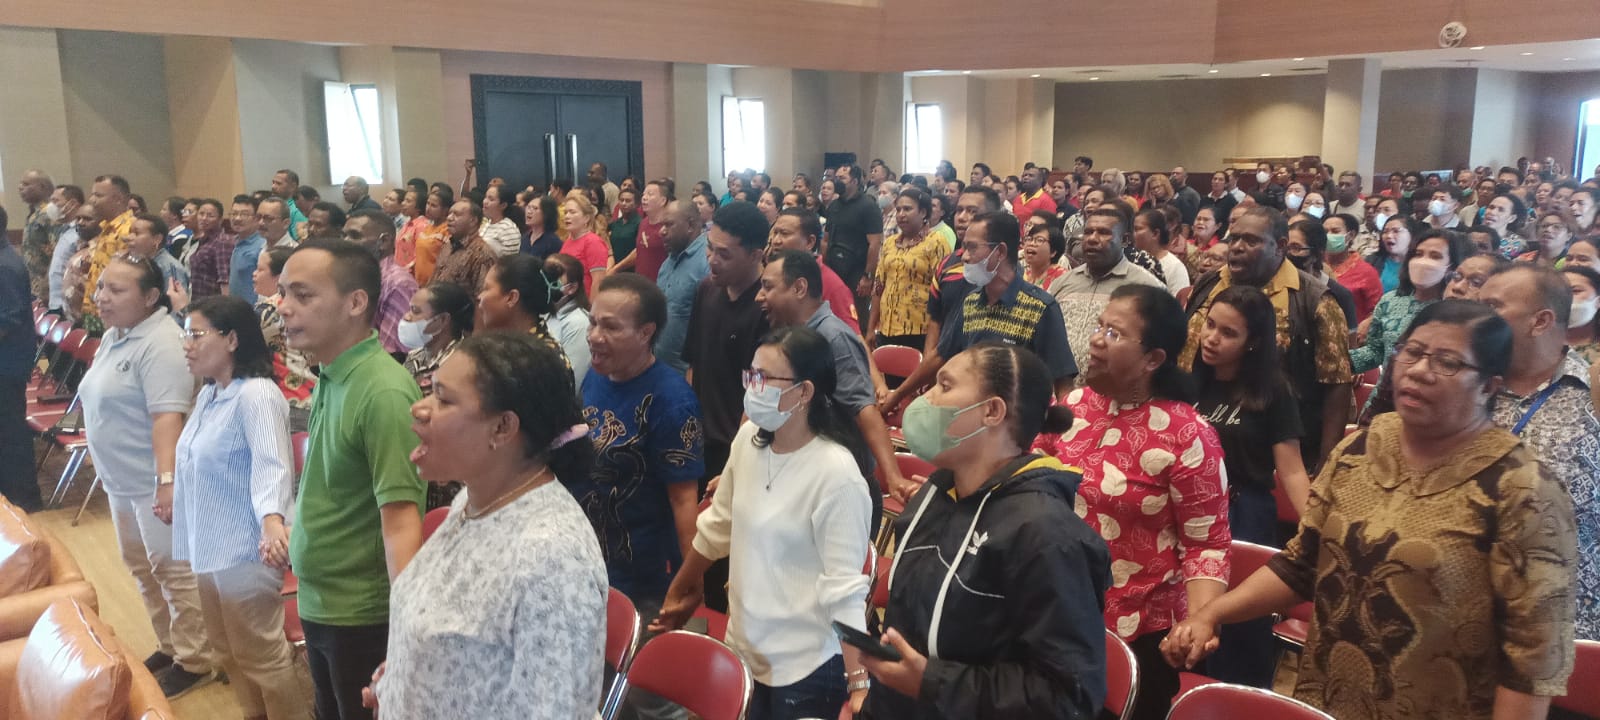 ASN Katolik sedang menyanyikan salah satu lagu rohani sambil berpegangan tangan bersama – Surya Papua/Frans Kobun